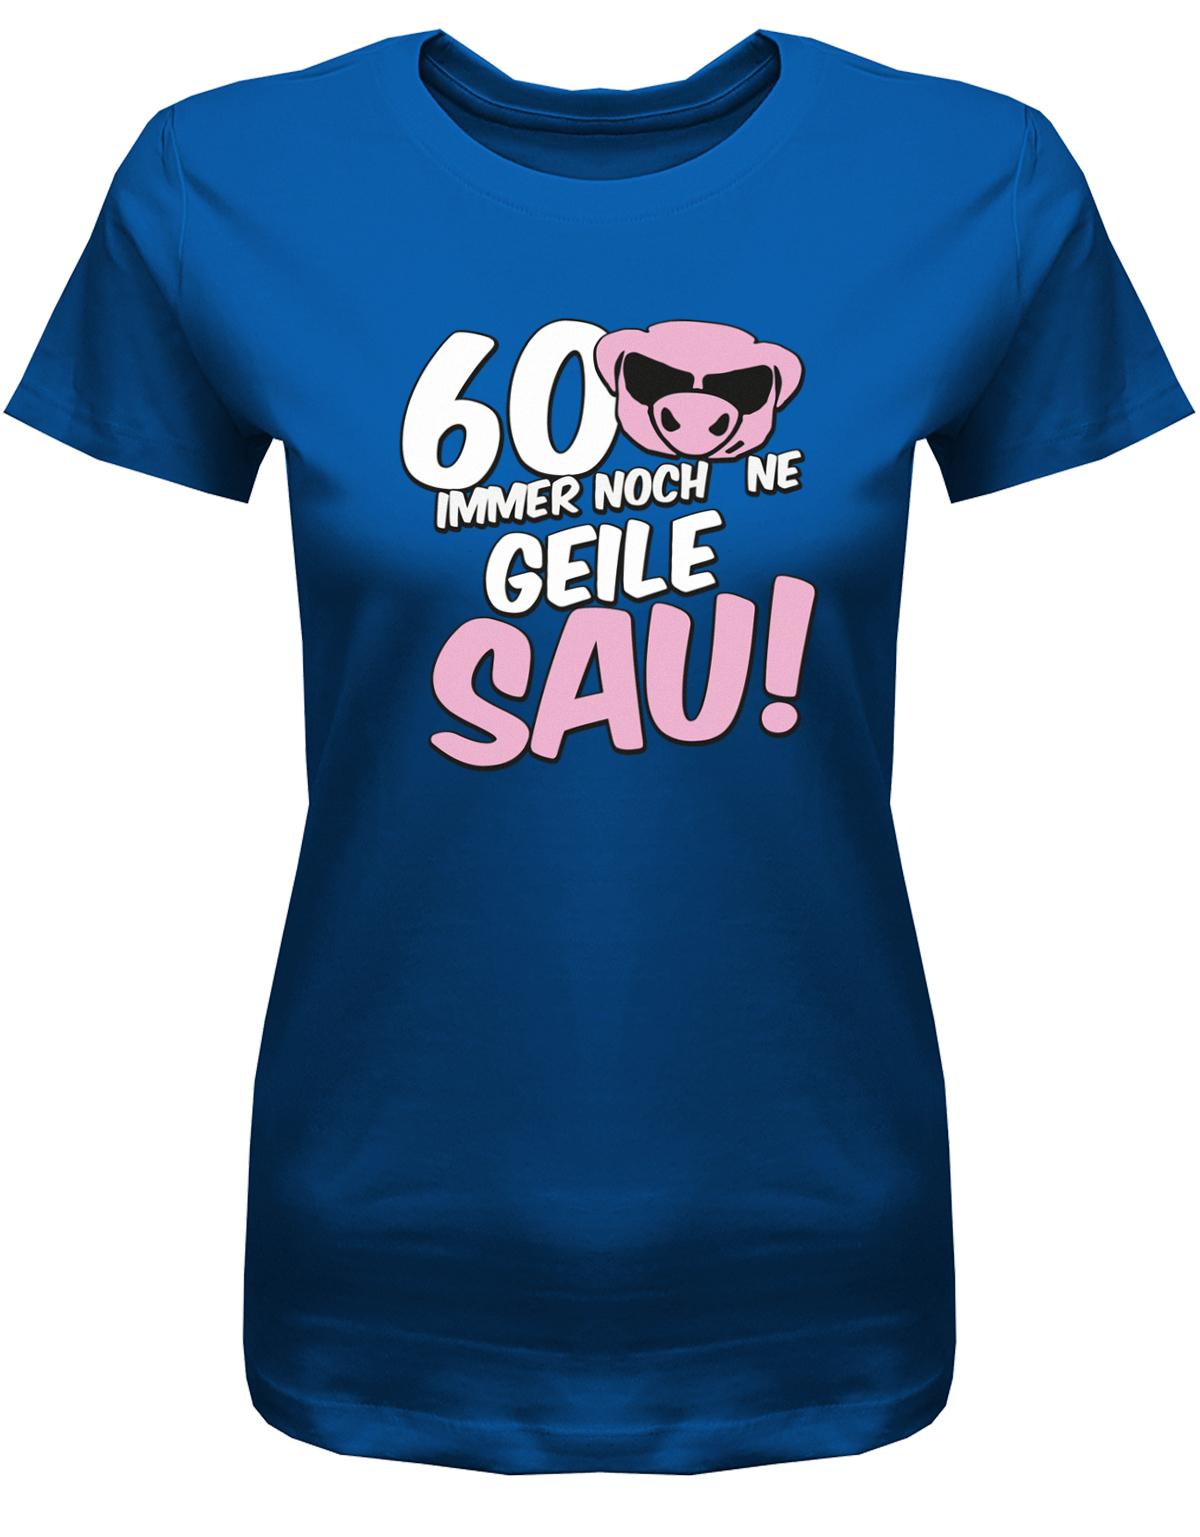 Lustiges T-Shirt zum 60 Geburtstag für die Frau Bedruckt mit 60 Immer noch 'ne geile Sau! Sau mit Sonnenbrille royalblau